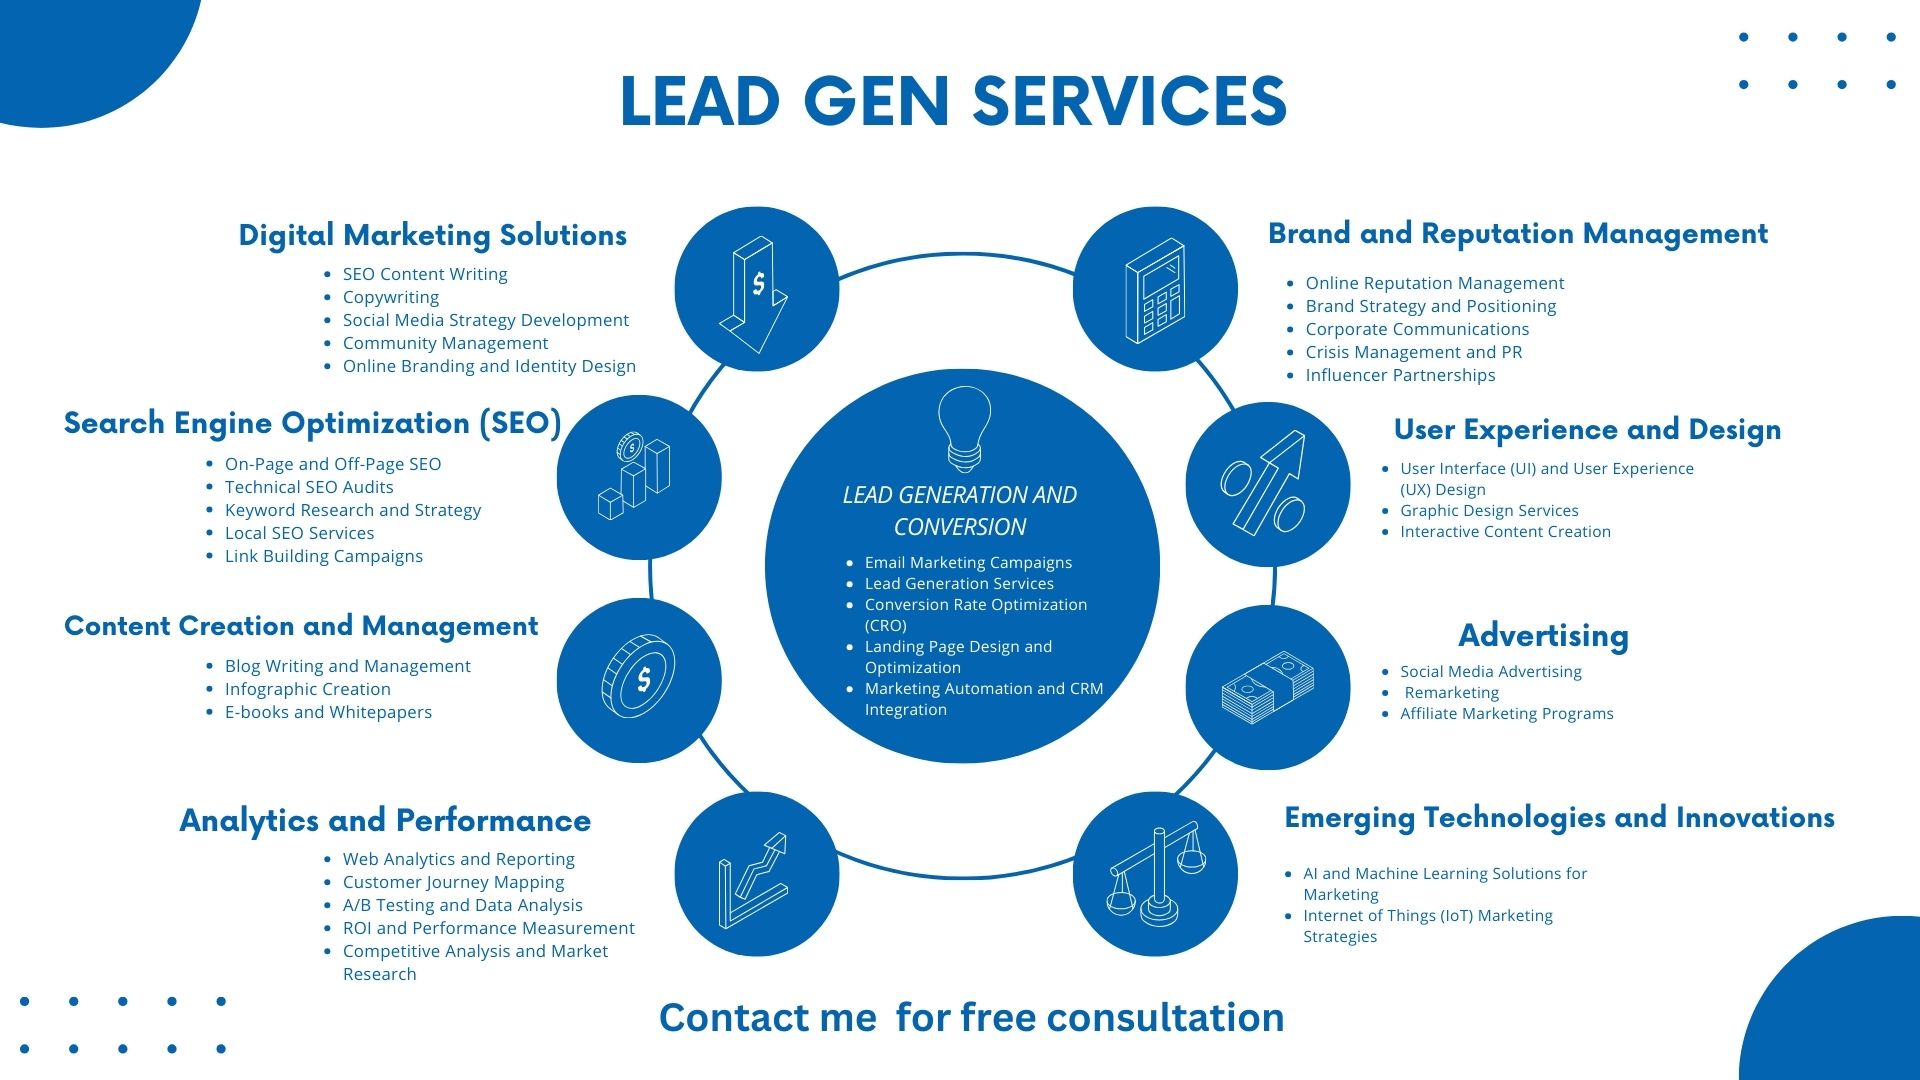 LEAD Gen Services